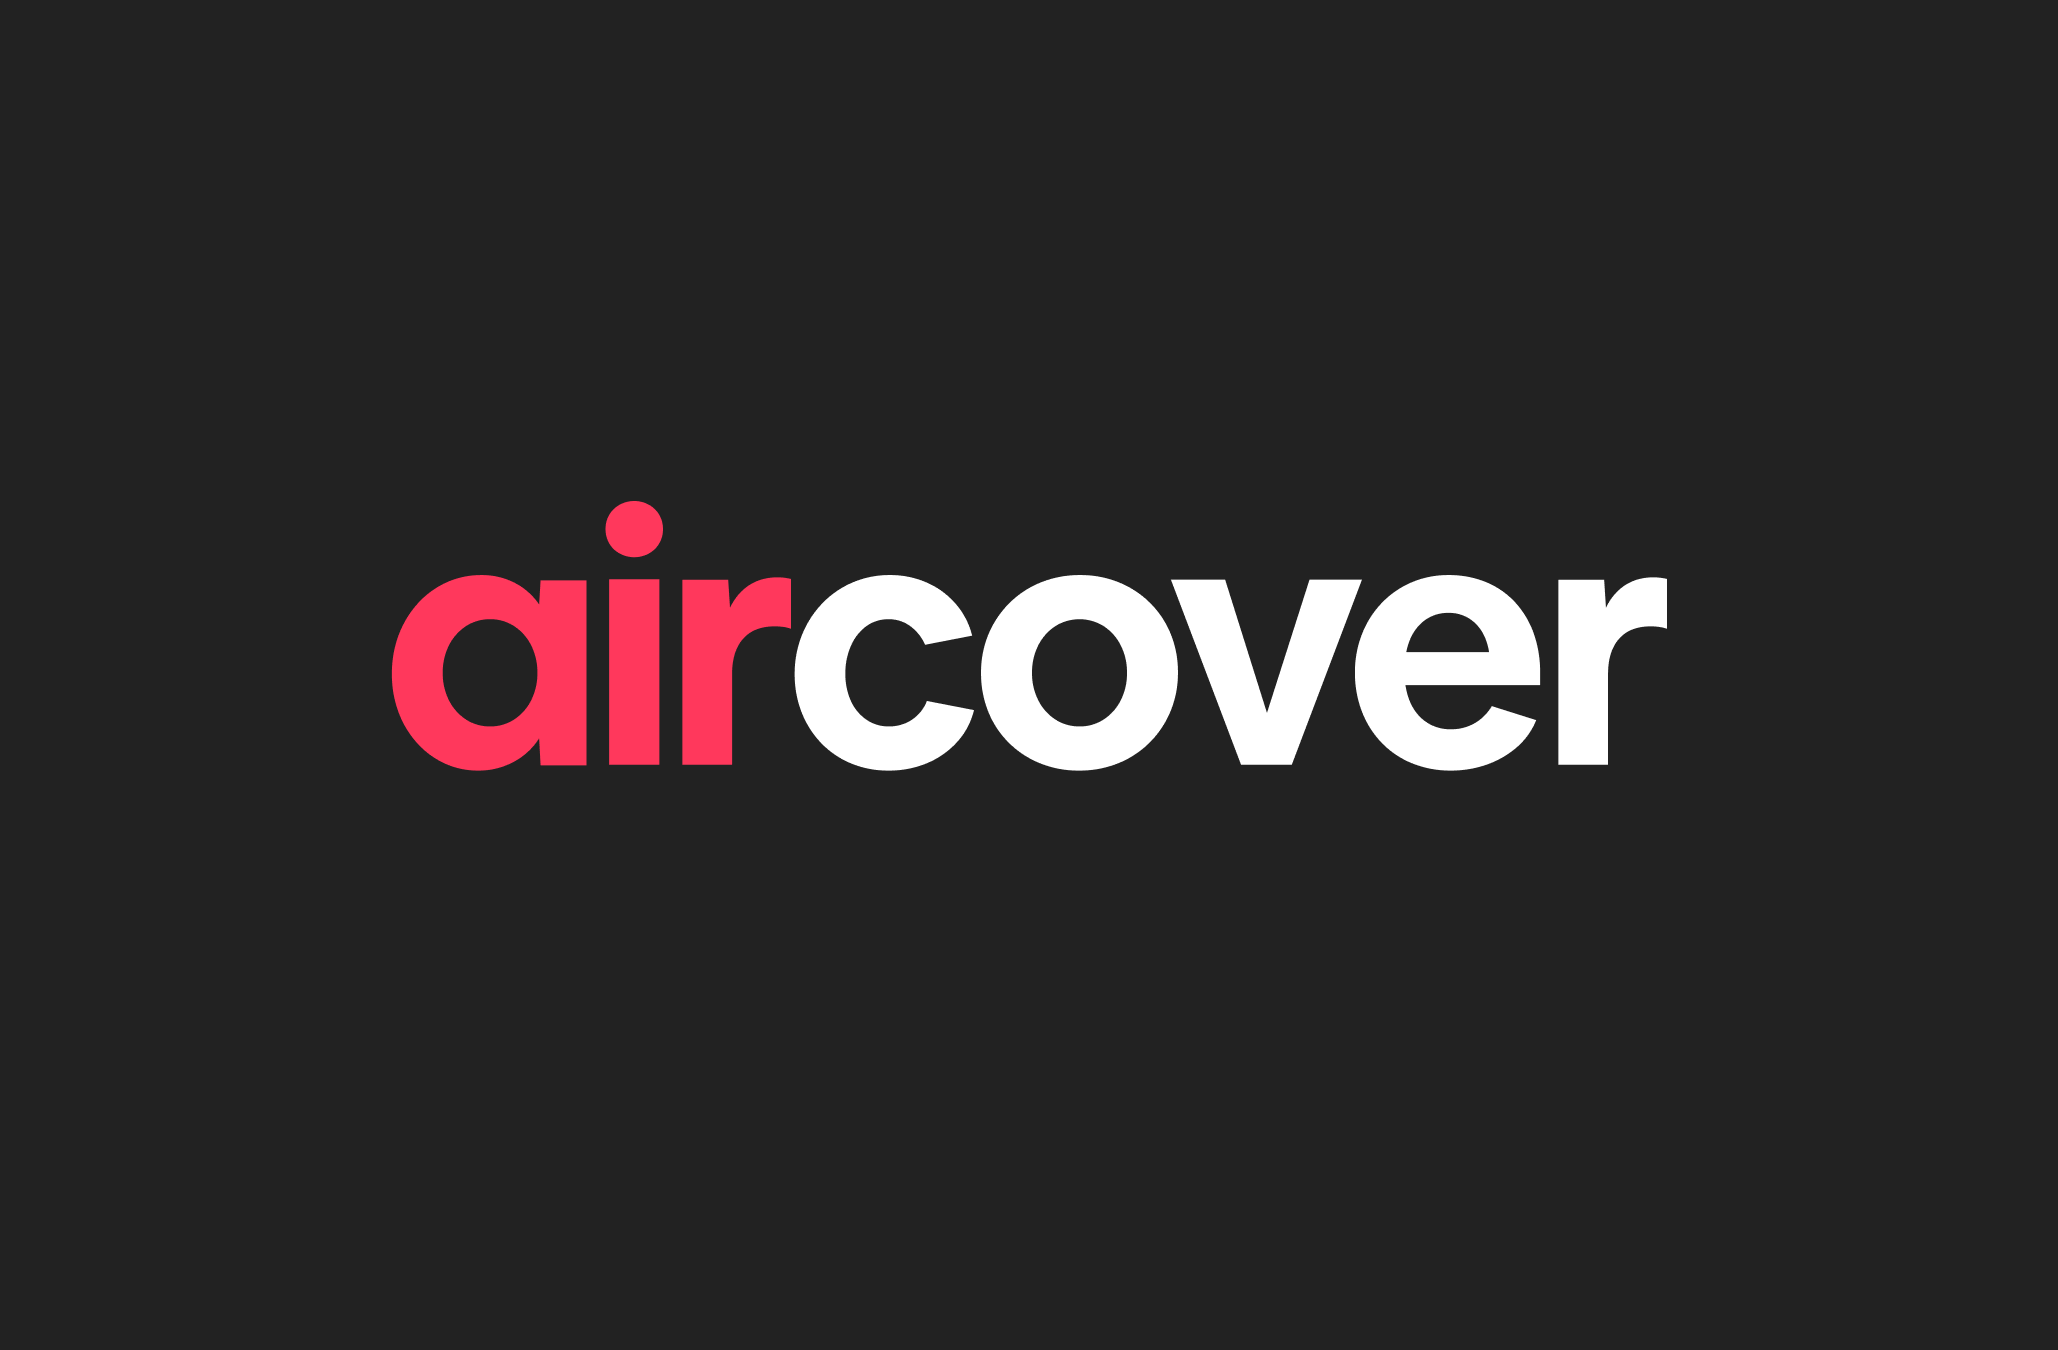 شعار AirCover، بالحروف الحمراء والبيضاء، على خلفية سوداء.